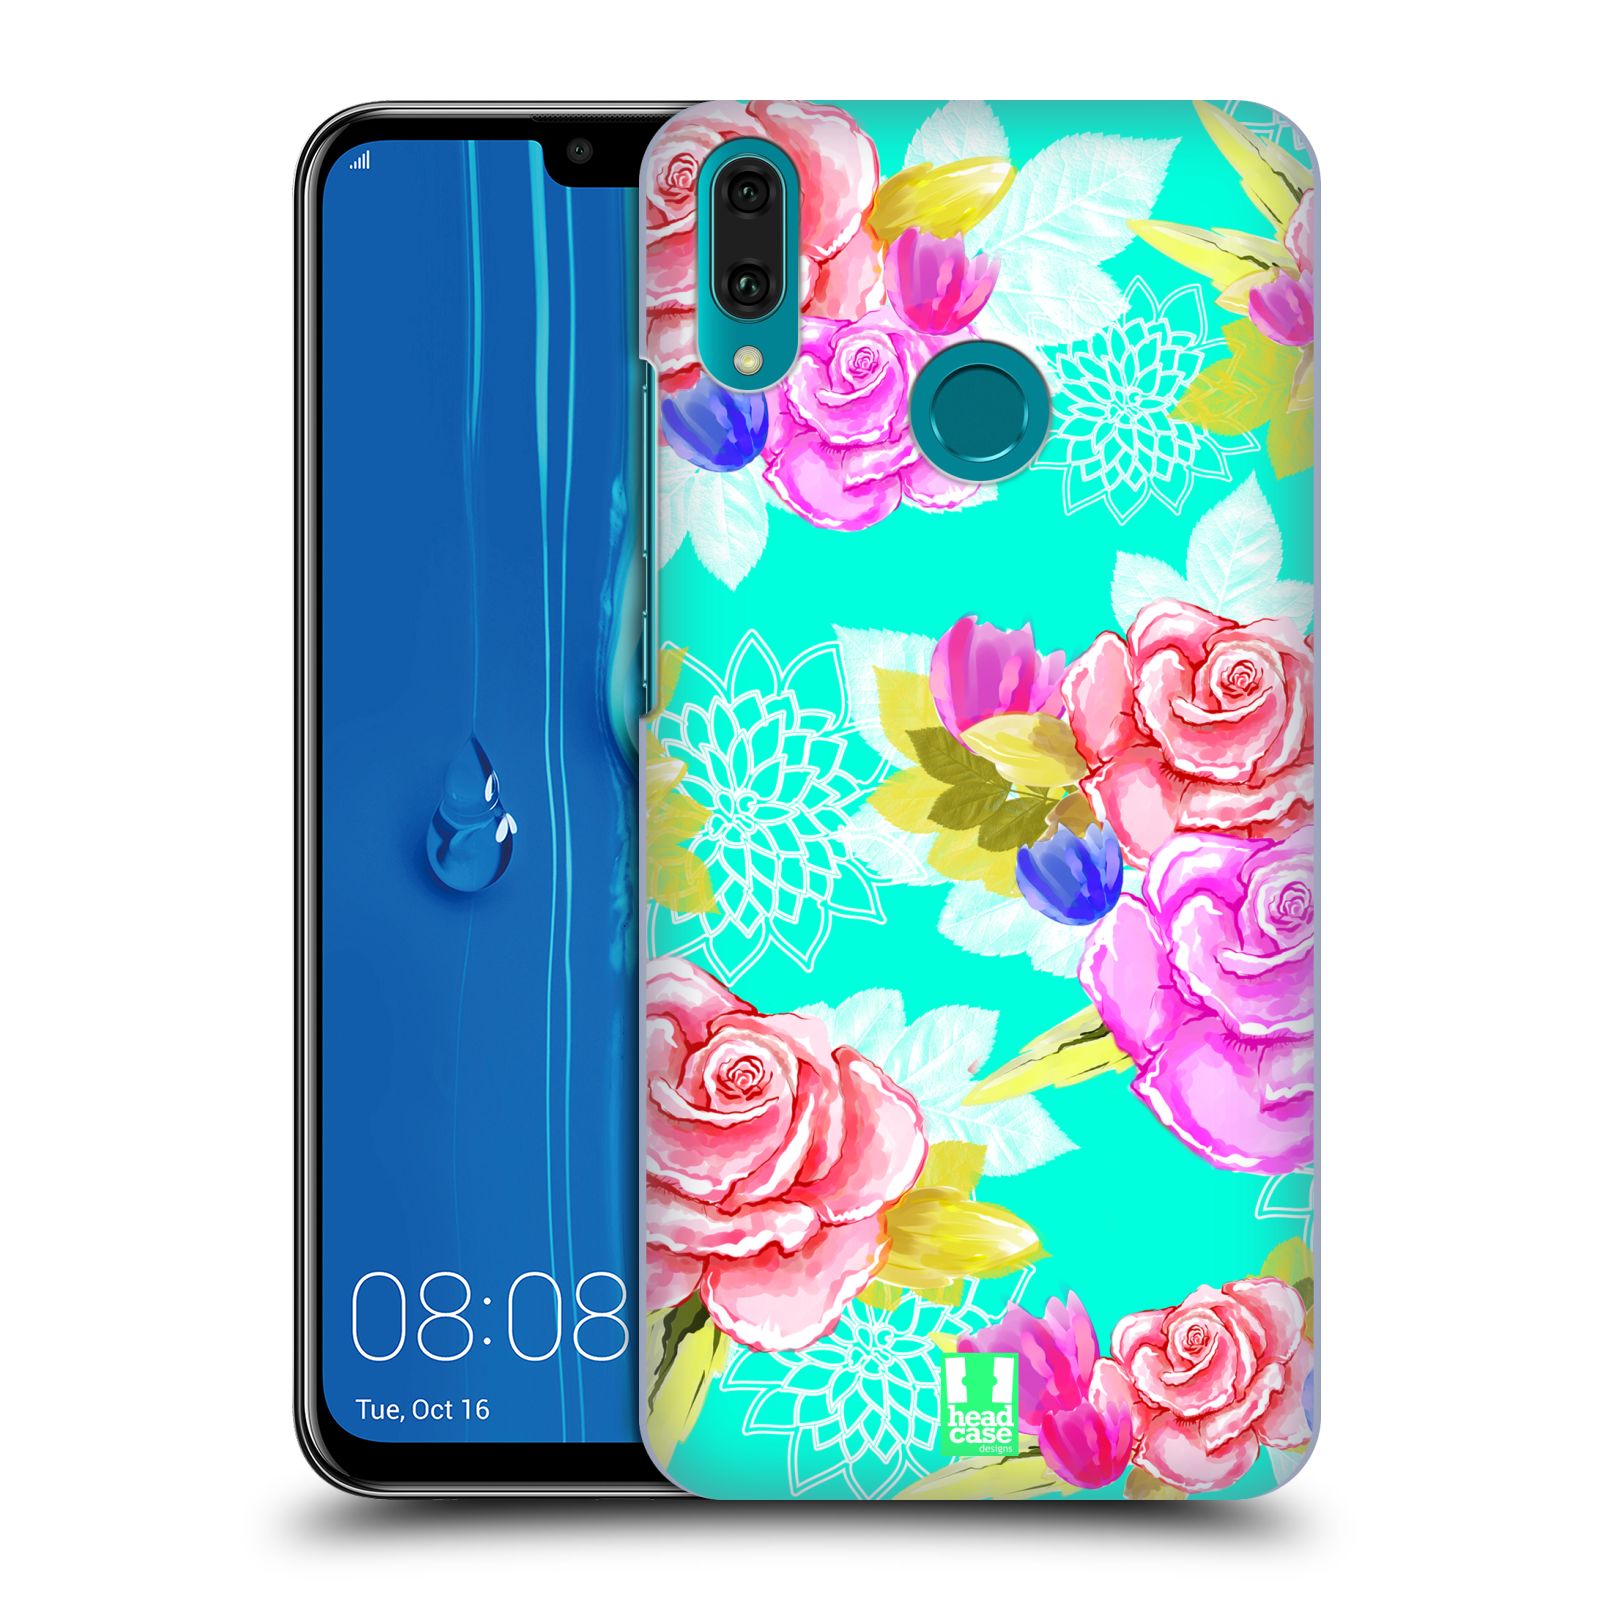 Pouzdro na mobil Huawei Y9 2019 - HEAD CASE - vzor Malované květiny barevné AQUA MODRÁ